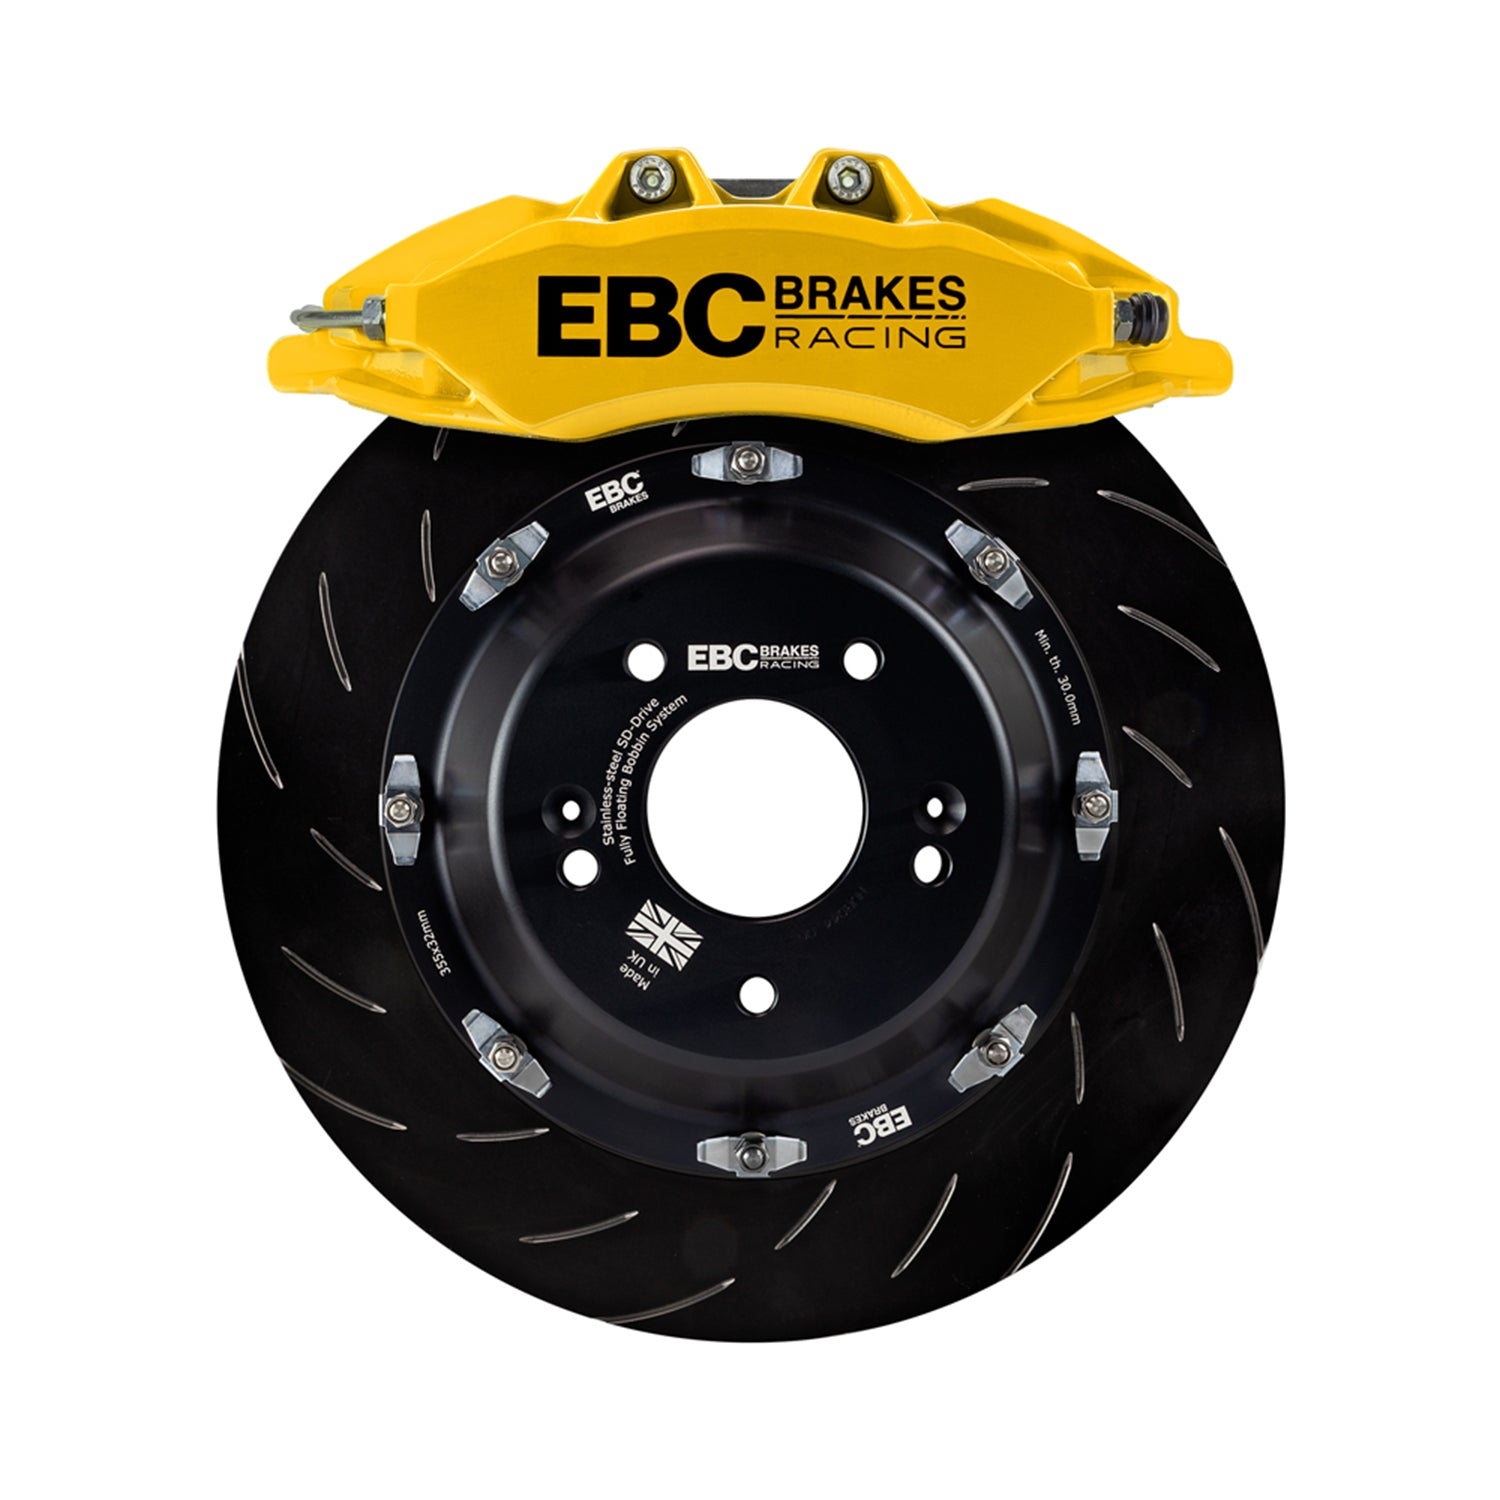 EBC Racing Big Brake Kit For BMW F80 M3, F82 M4 & F87 M2 In Yellow